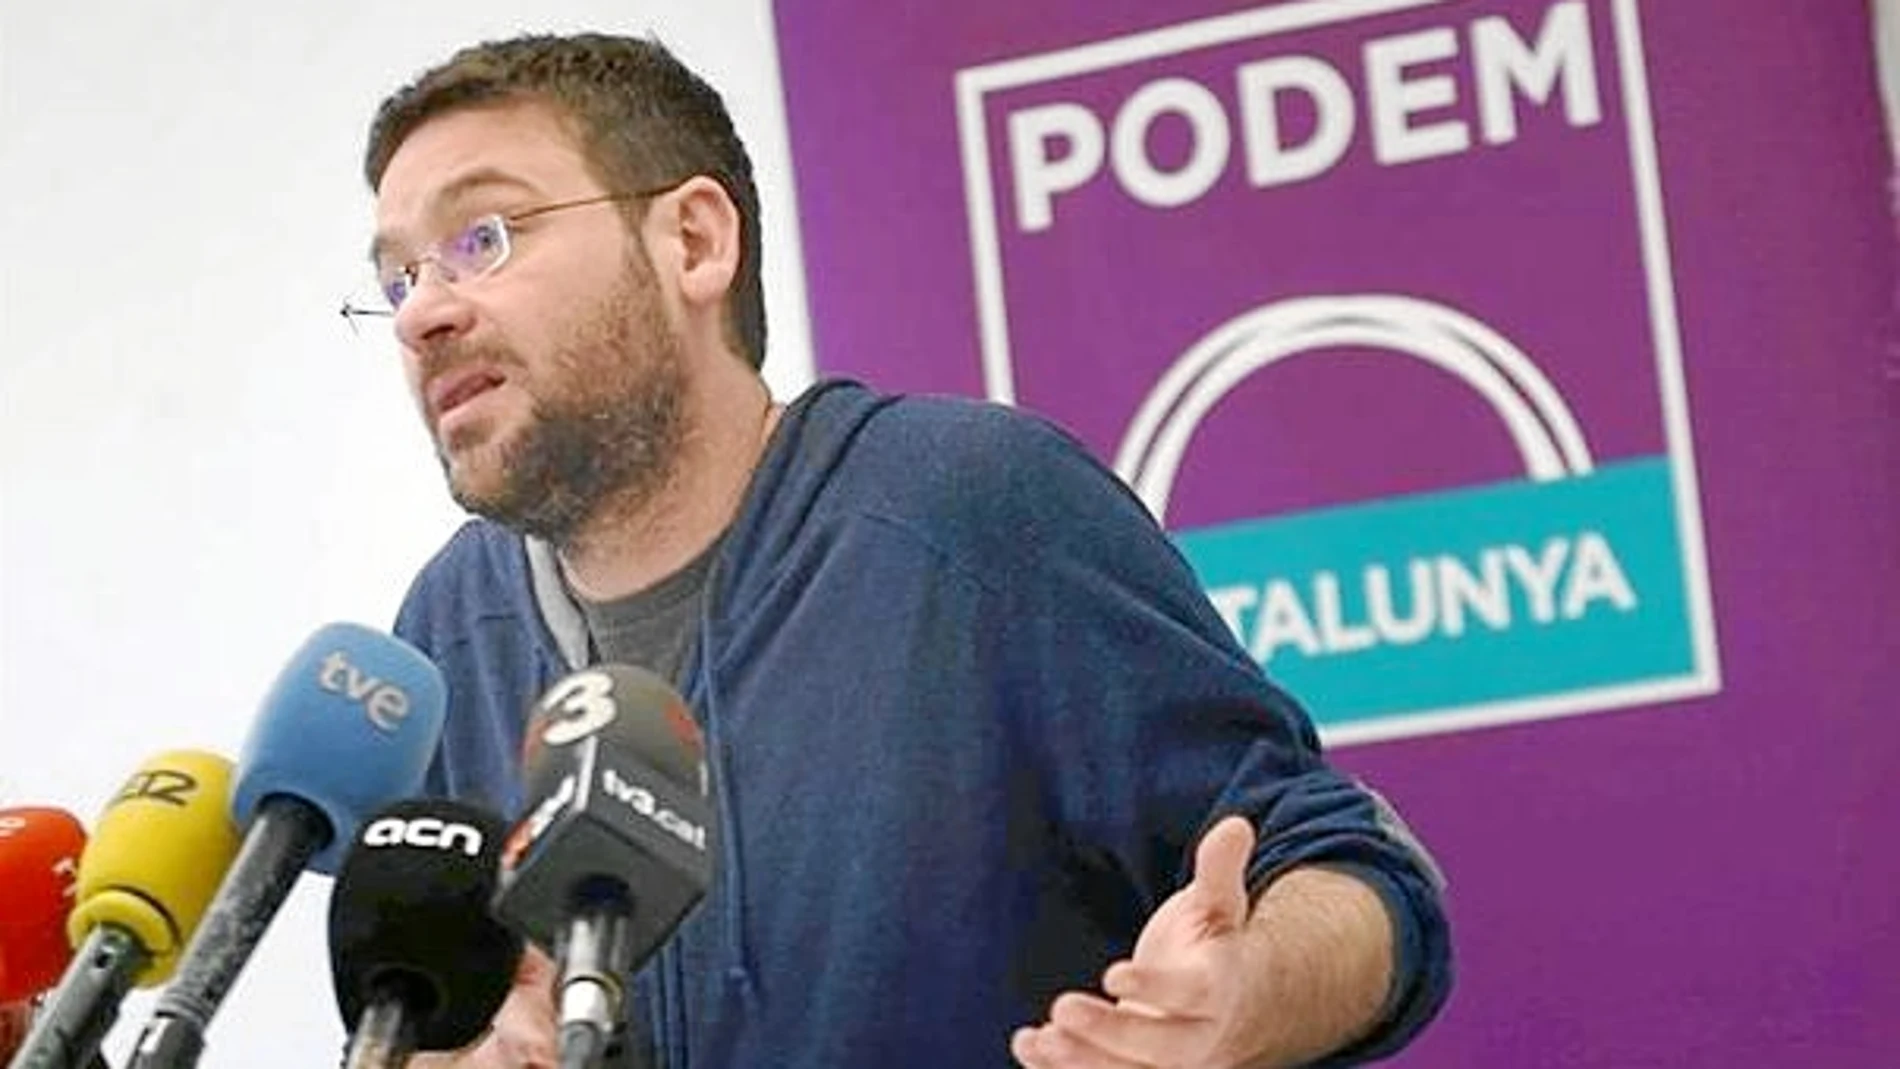 El secretario de Podem en Cataluña,Albano Dante Fachin, aseguró que aplicará el resultado de la votación.